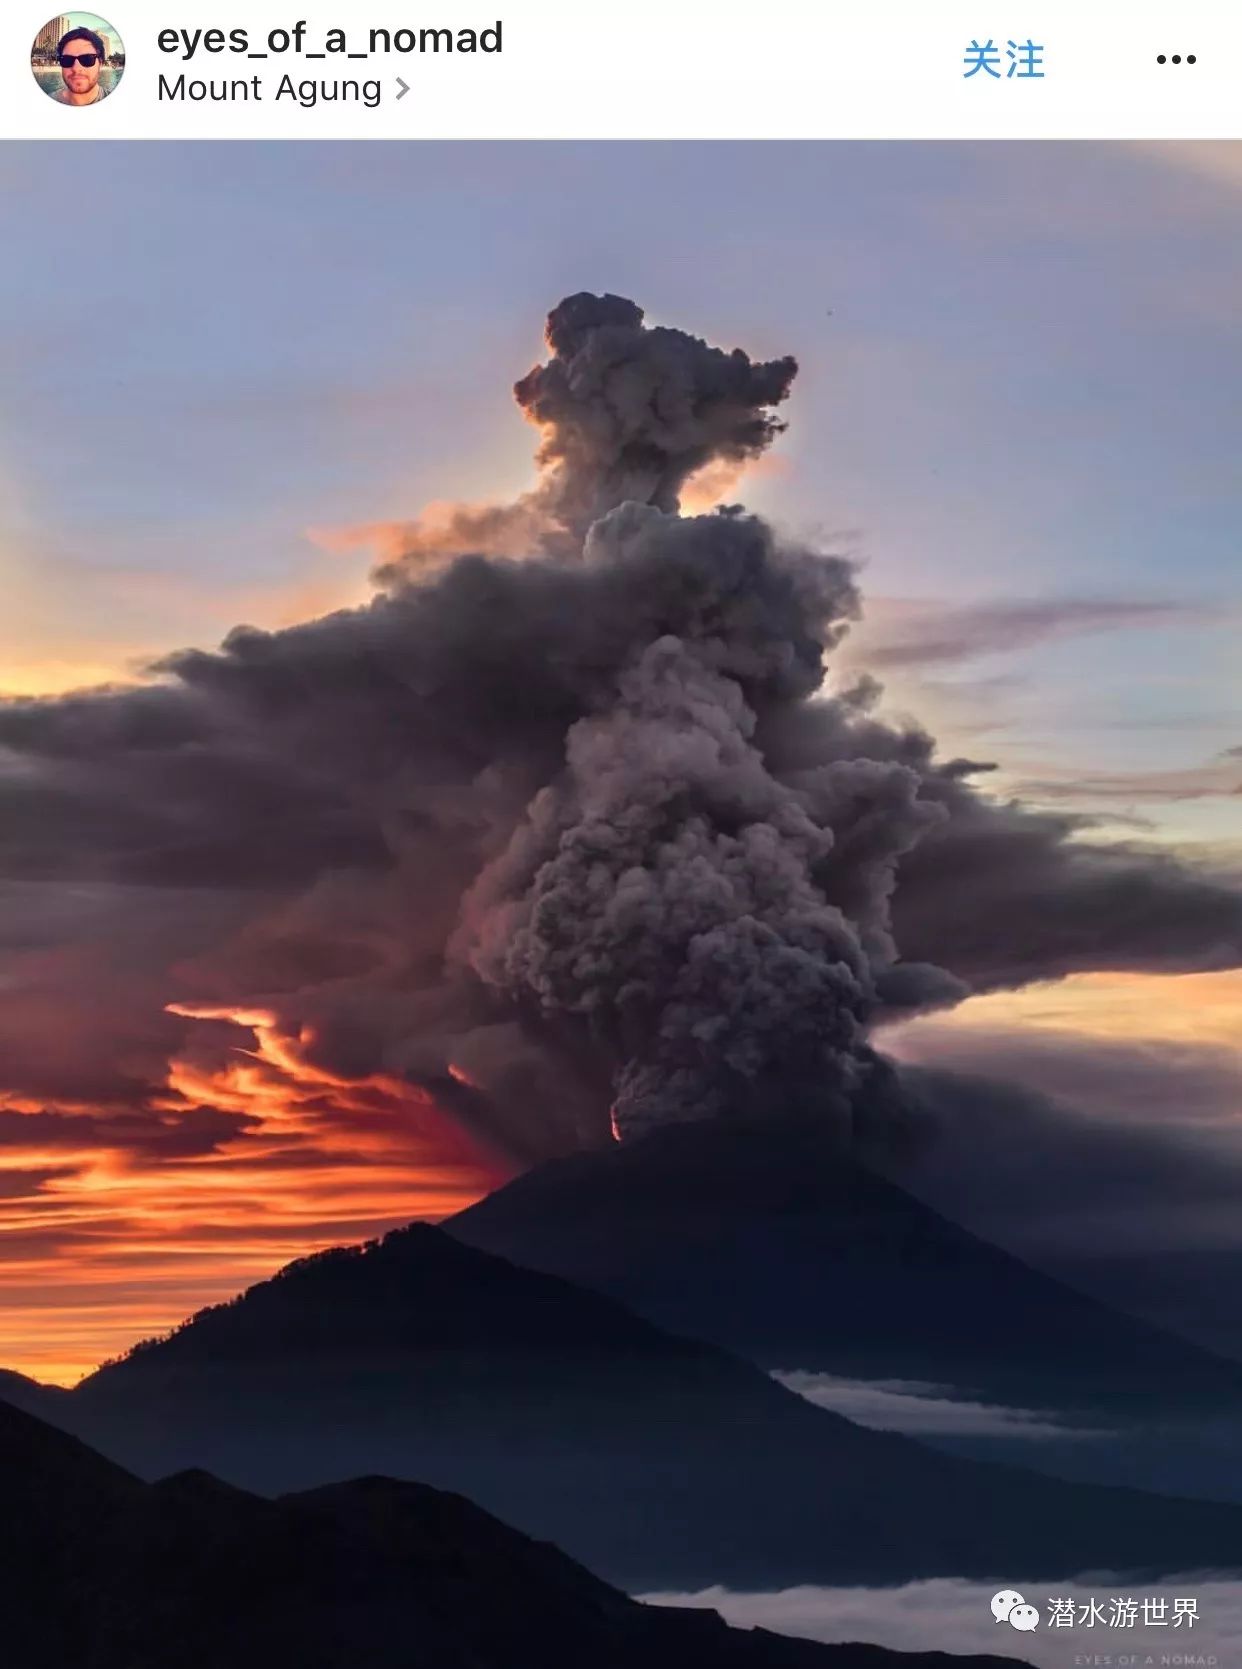 巴厘岛图蓝本火山真的喷发了潜水员还能去吗